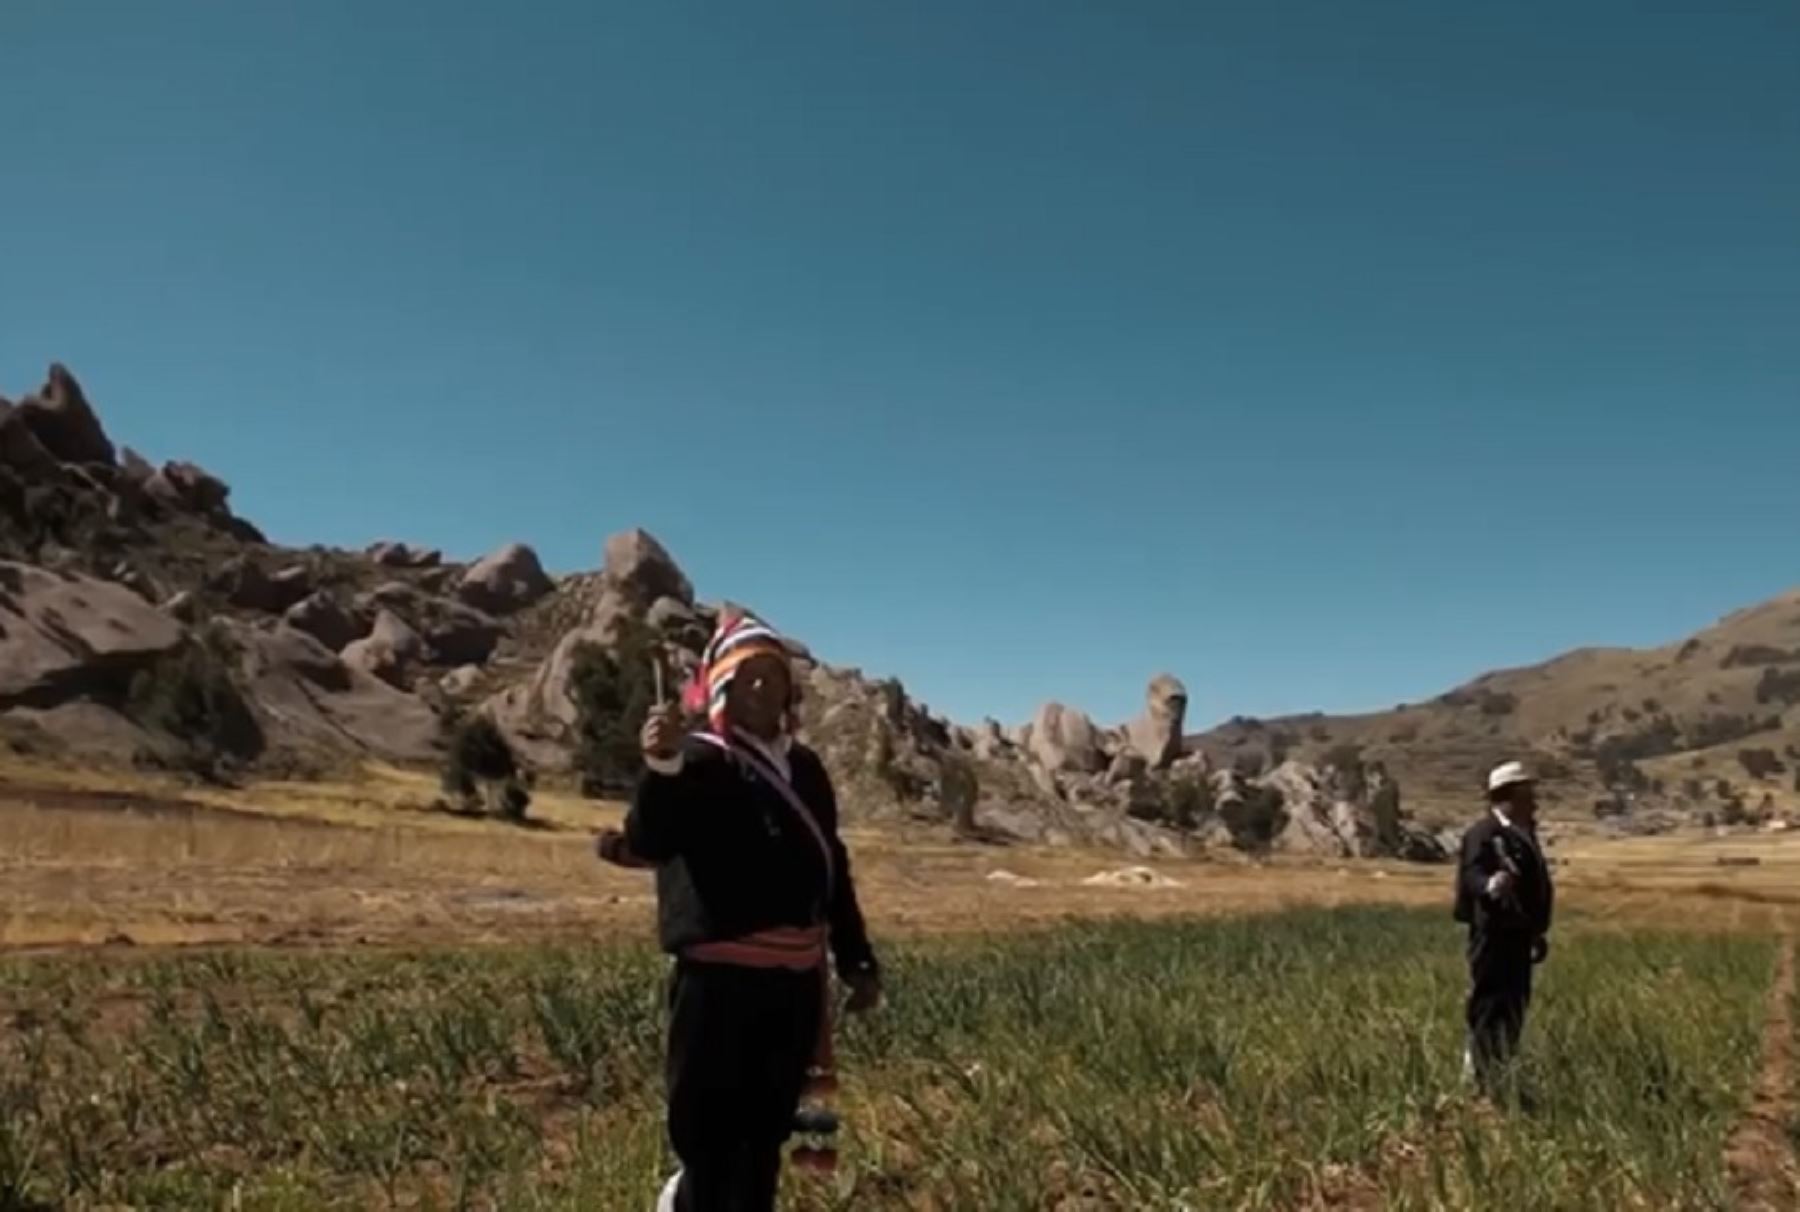 La población de Jayujayuni, comunidad altoandina próxima al lago Titicaca, en la región Puno, ha construido una propuesta de turismo comunitario, sostenible, basada en compartir y aprender de la cultura, y una fuerte conexión con la naturaleza.